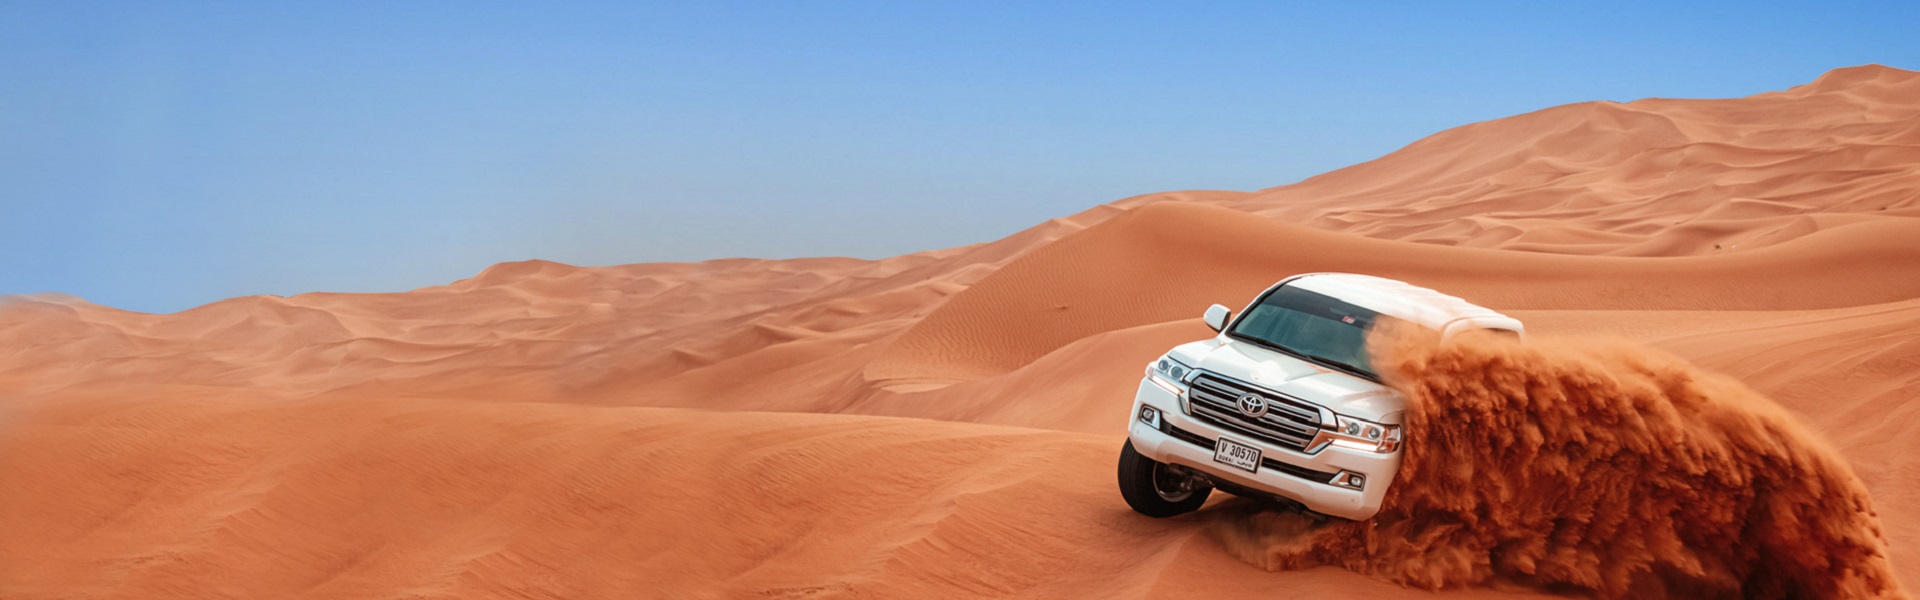 Registracija vozila | Desert safari in Dubai